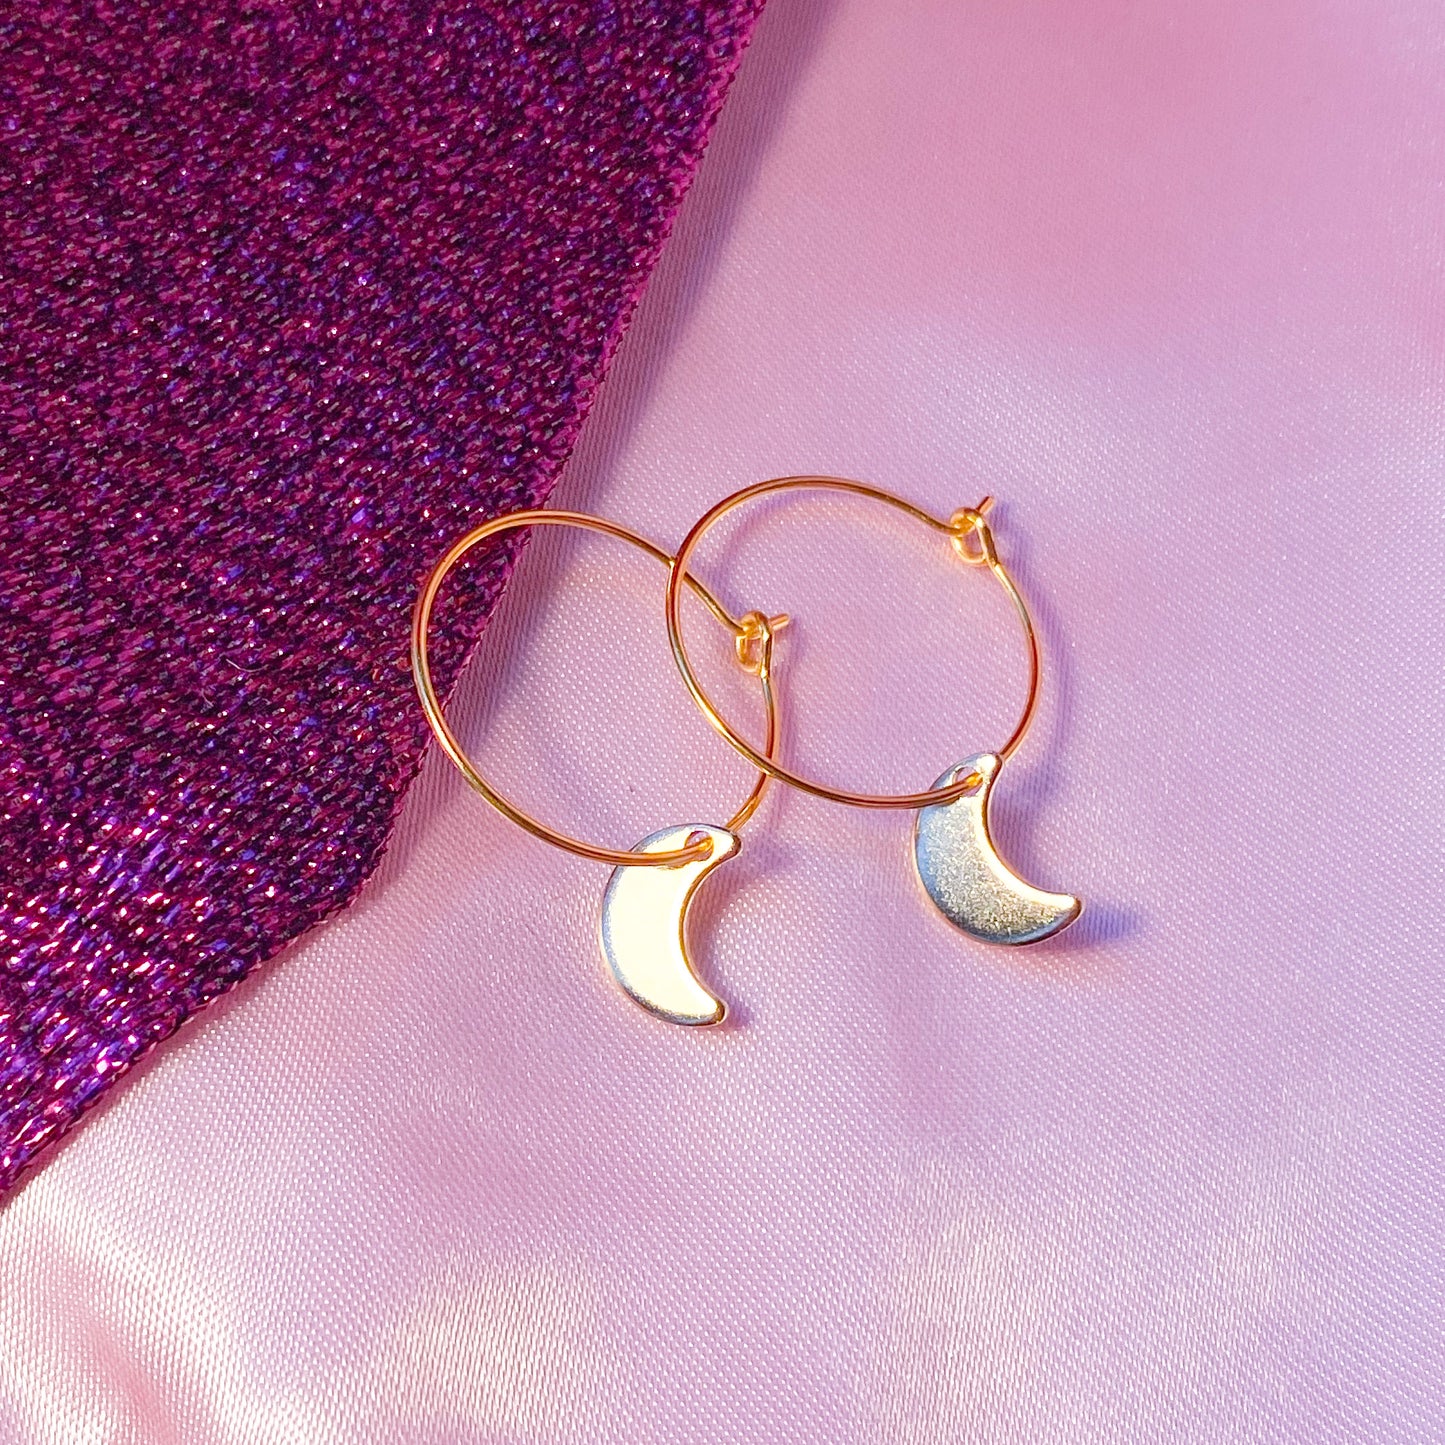 Gold moon charm hoop earrings, minimalist celestial earrings